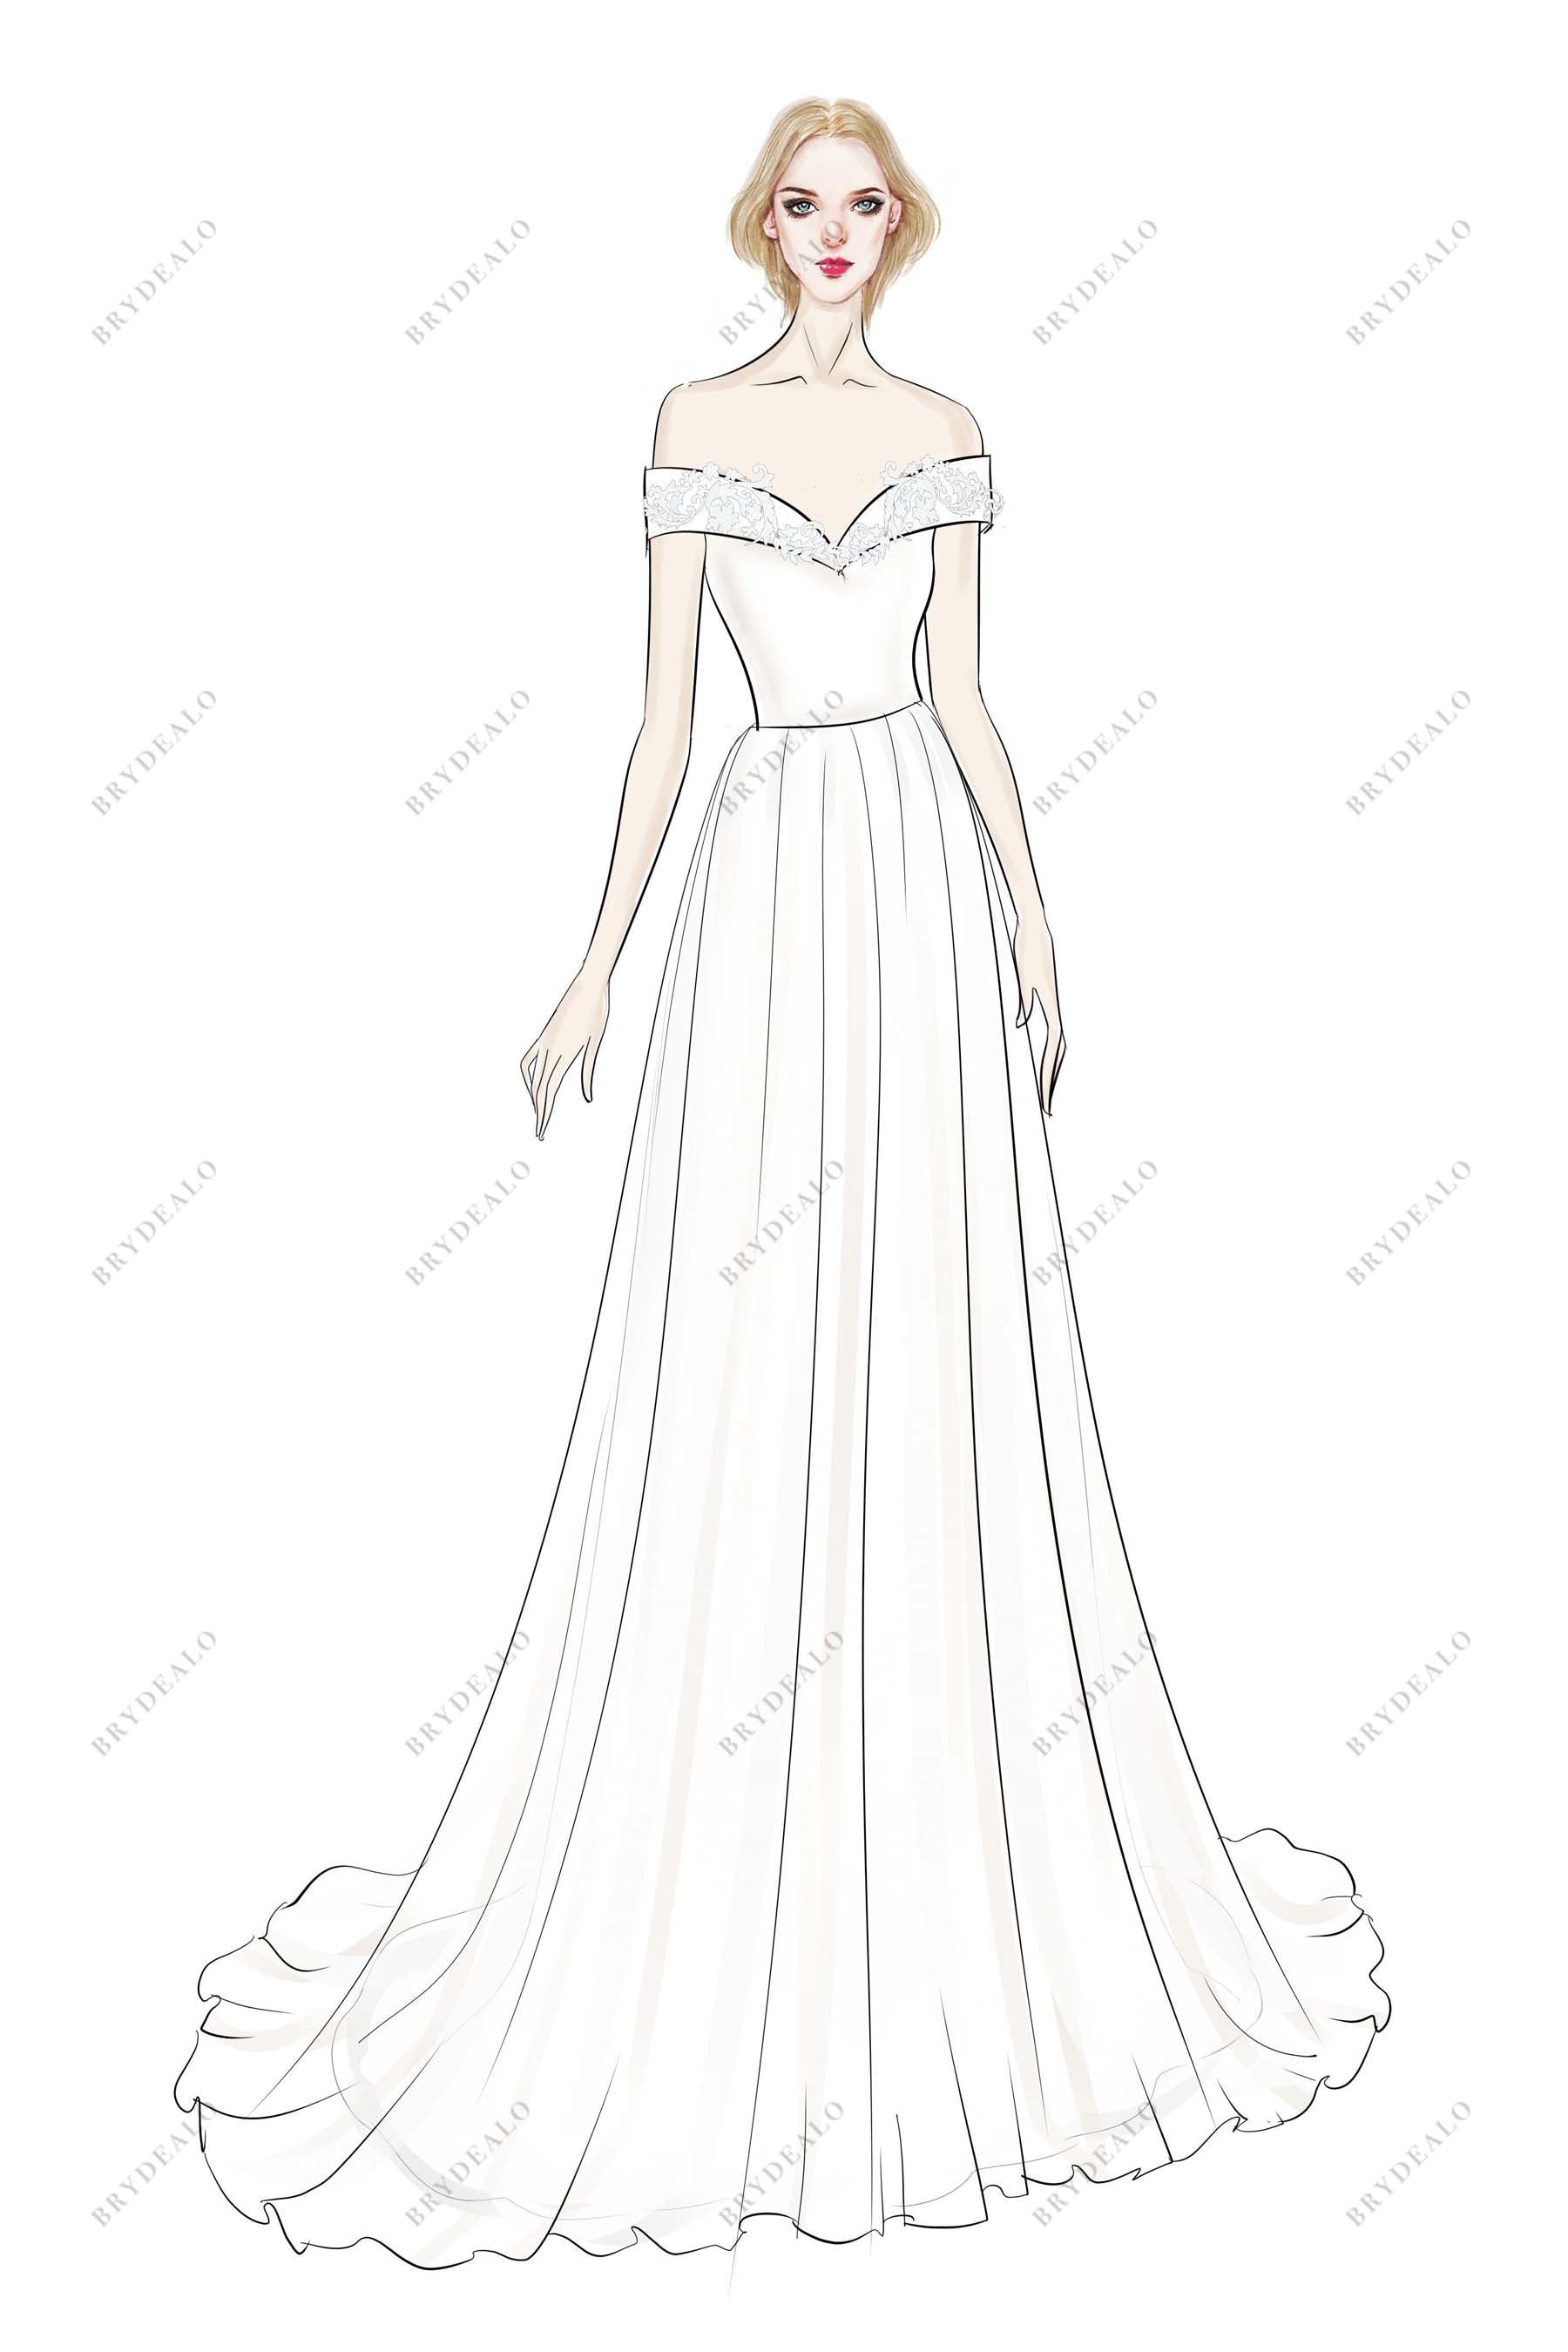 Elegant Off-shoulder A-line Designer Bridal Dress Sketch